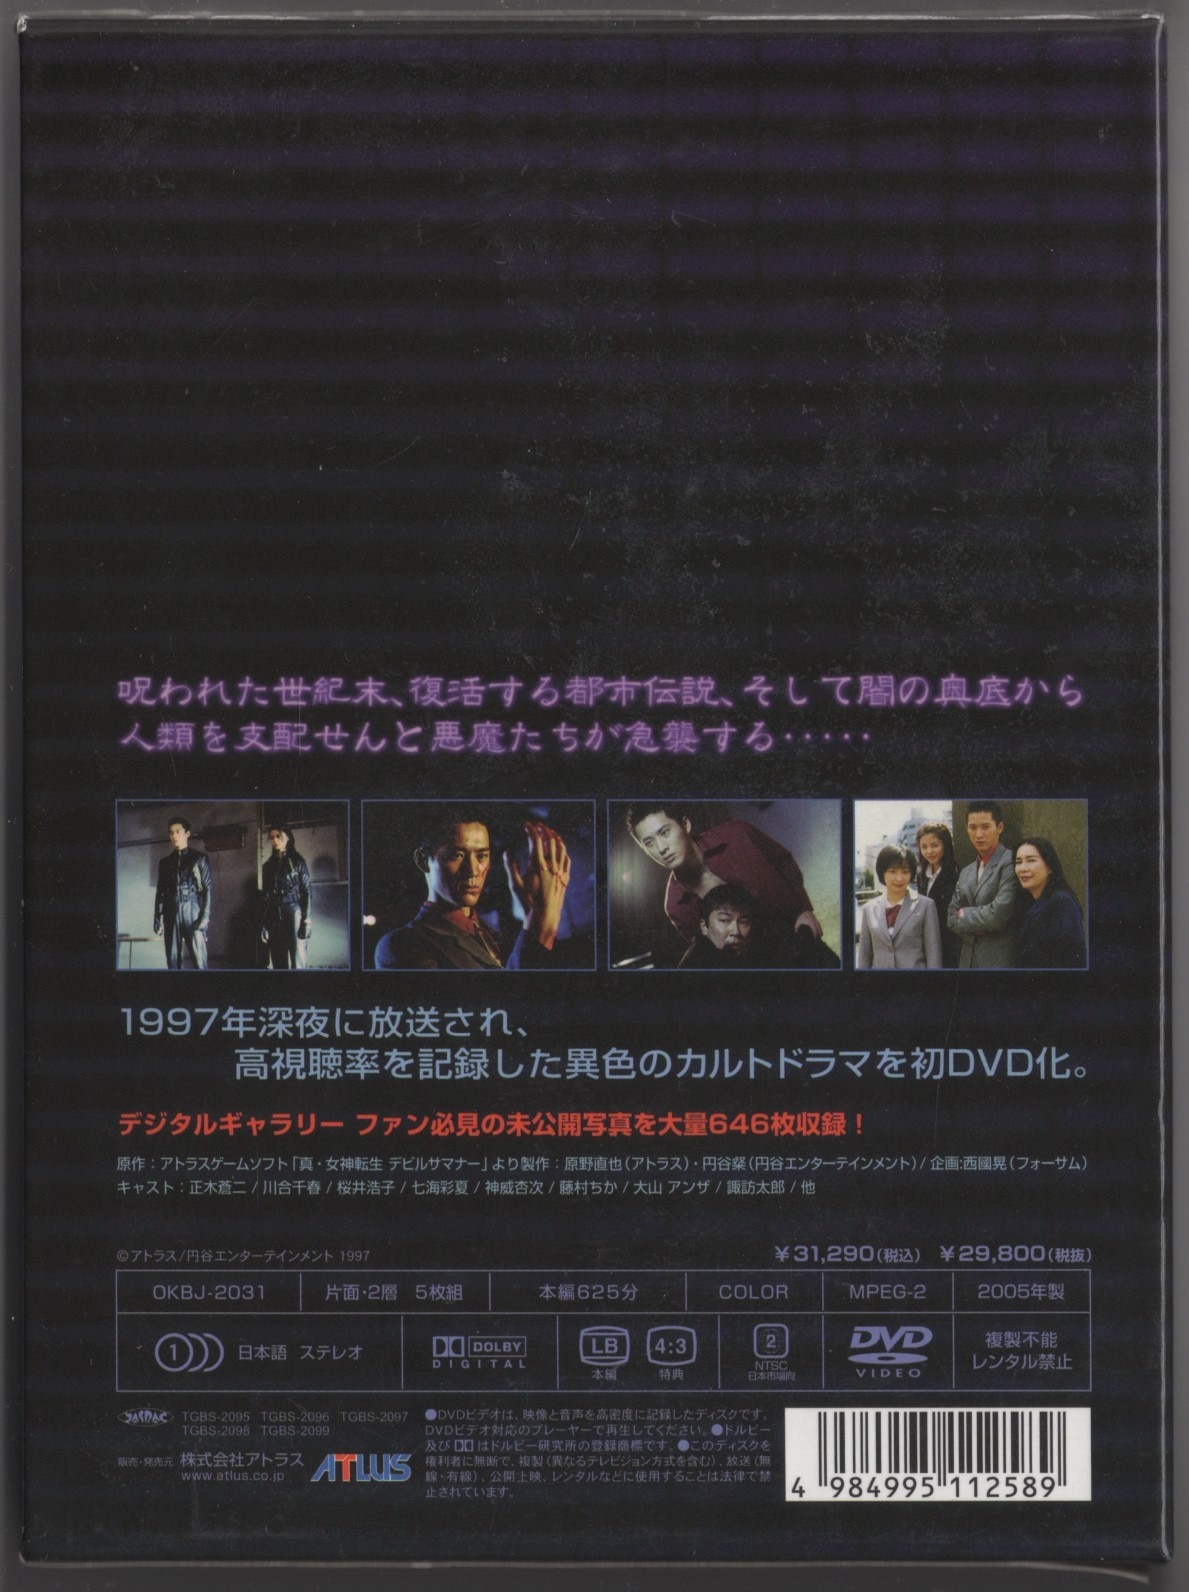 ☆真・女神転生 デビルサマナー DVD-BOX【全25話】☆アトラス OKBJ ...